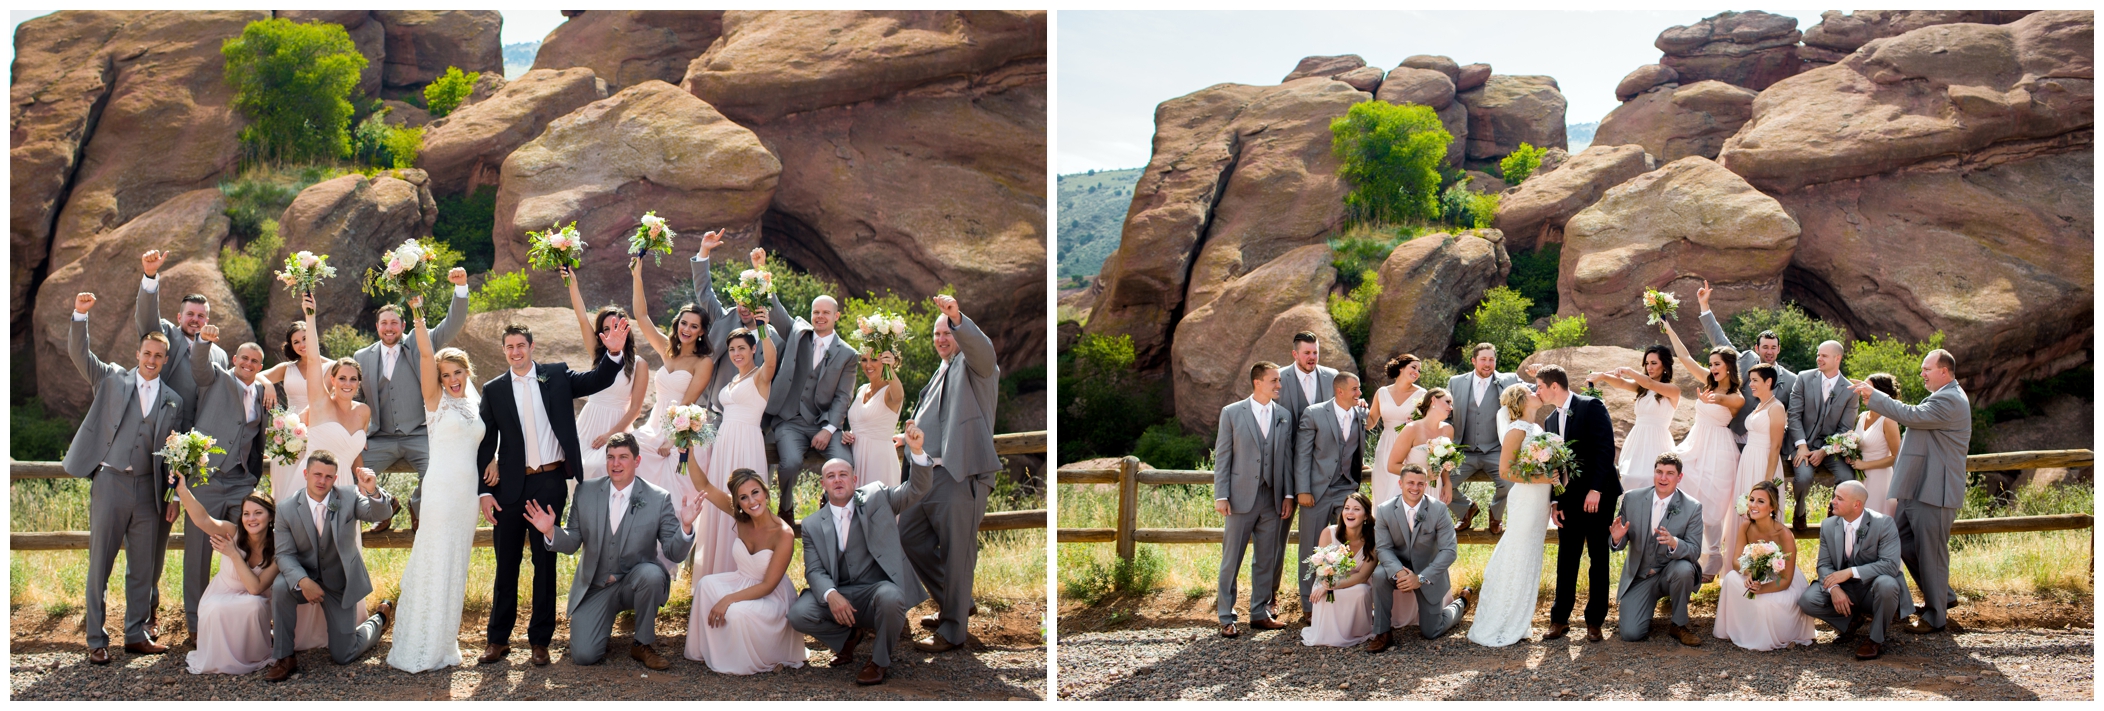 Red Rocks Colorado wedding photos 